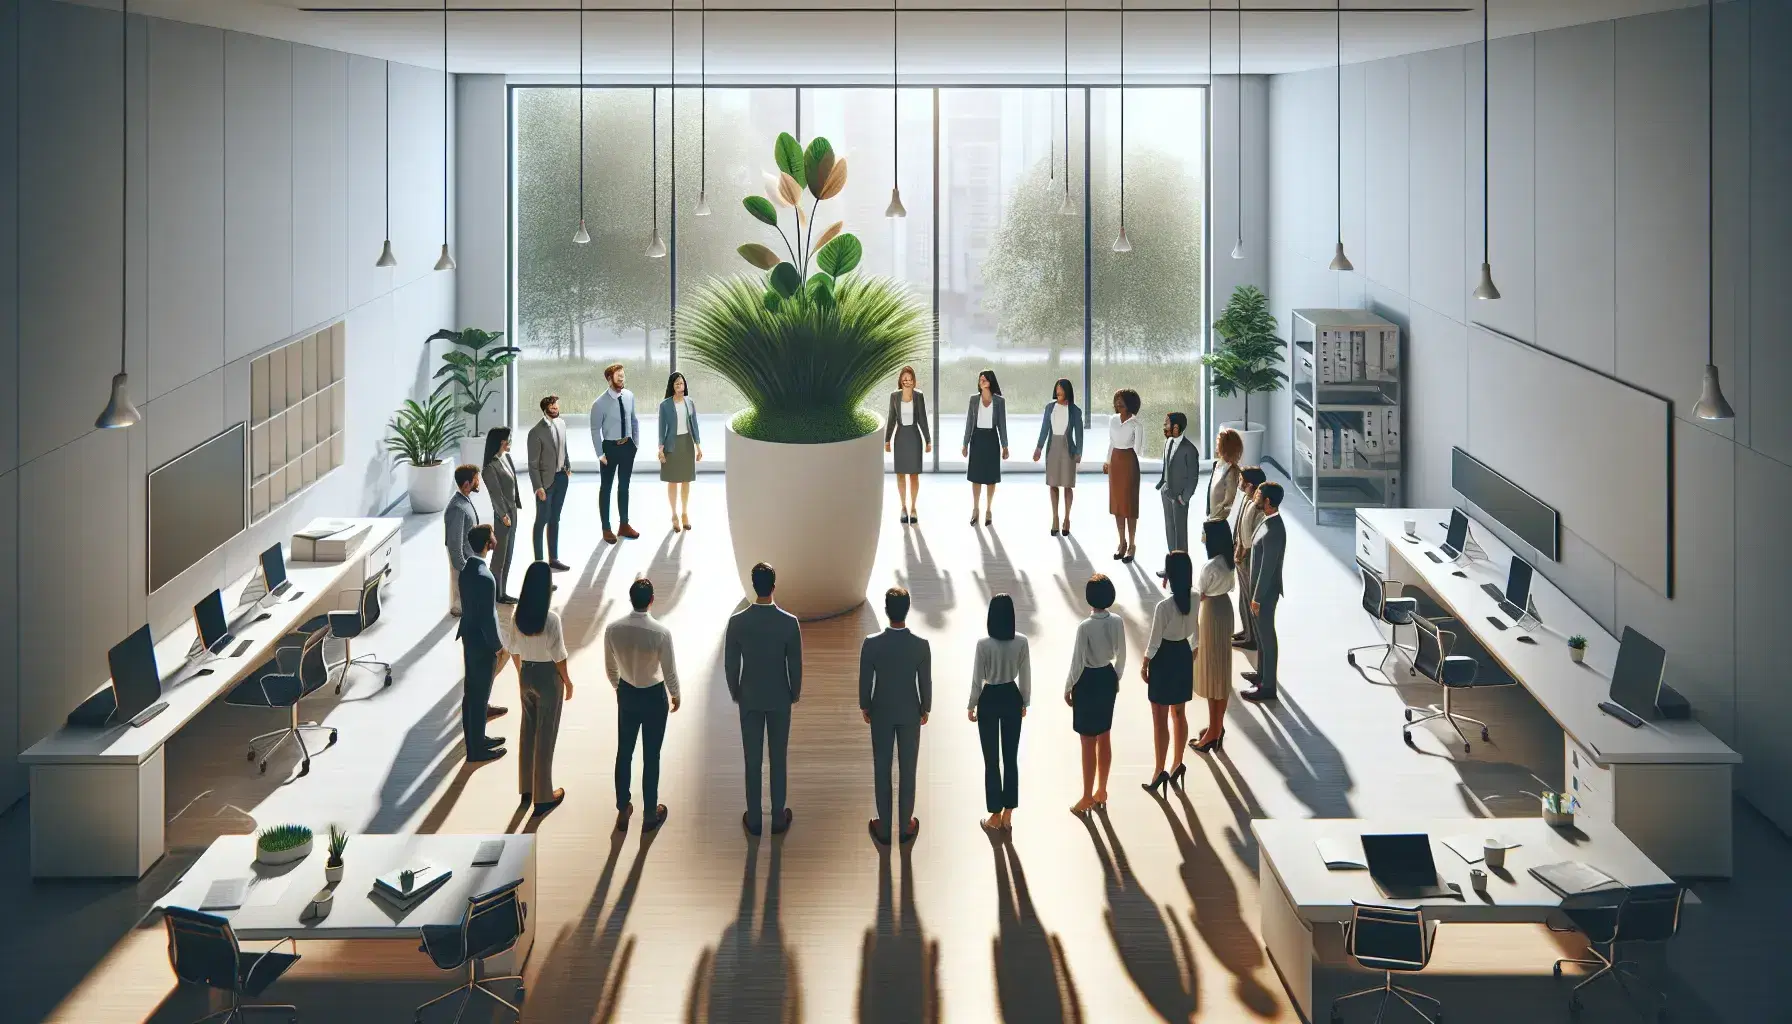 Grupo diverso de profesionales en círculo alrededor de una planta en oficina moderna con ventanas grandes y mobiliario ergonómico.